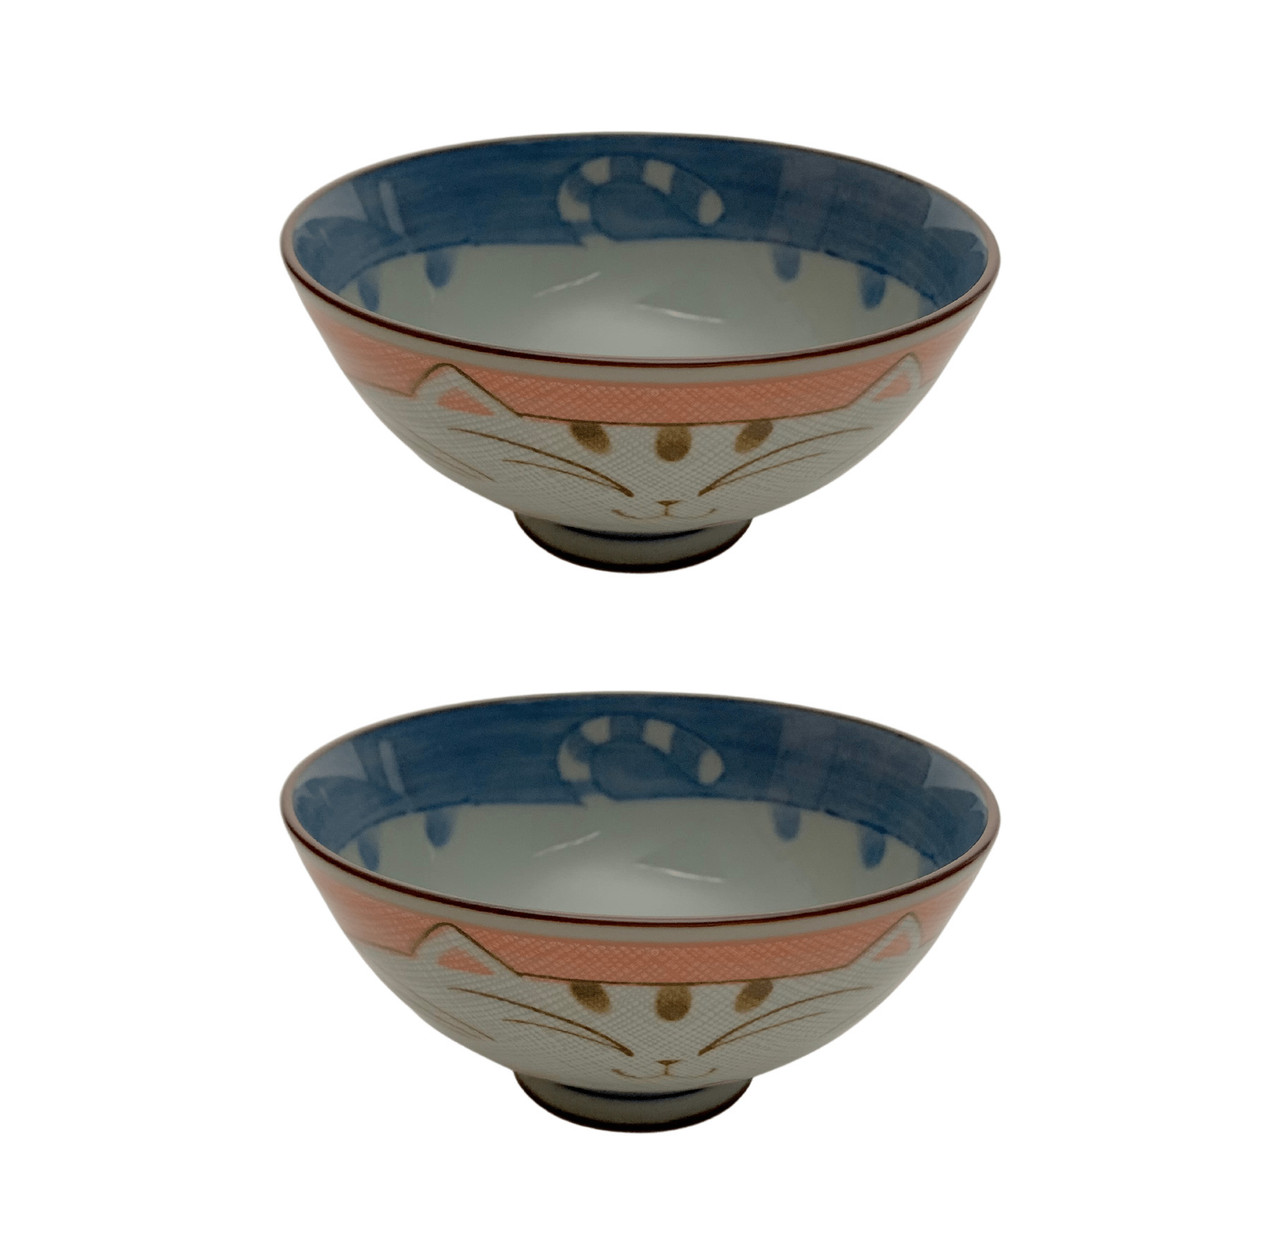 Japanese Porcelain Bowl Soup Bowl Pho Bowl Ramen Bowl Made in Japan, Maneki  Neko Smiling Cat Pattern (2, 4.5 inch)